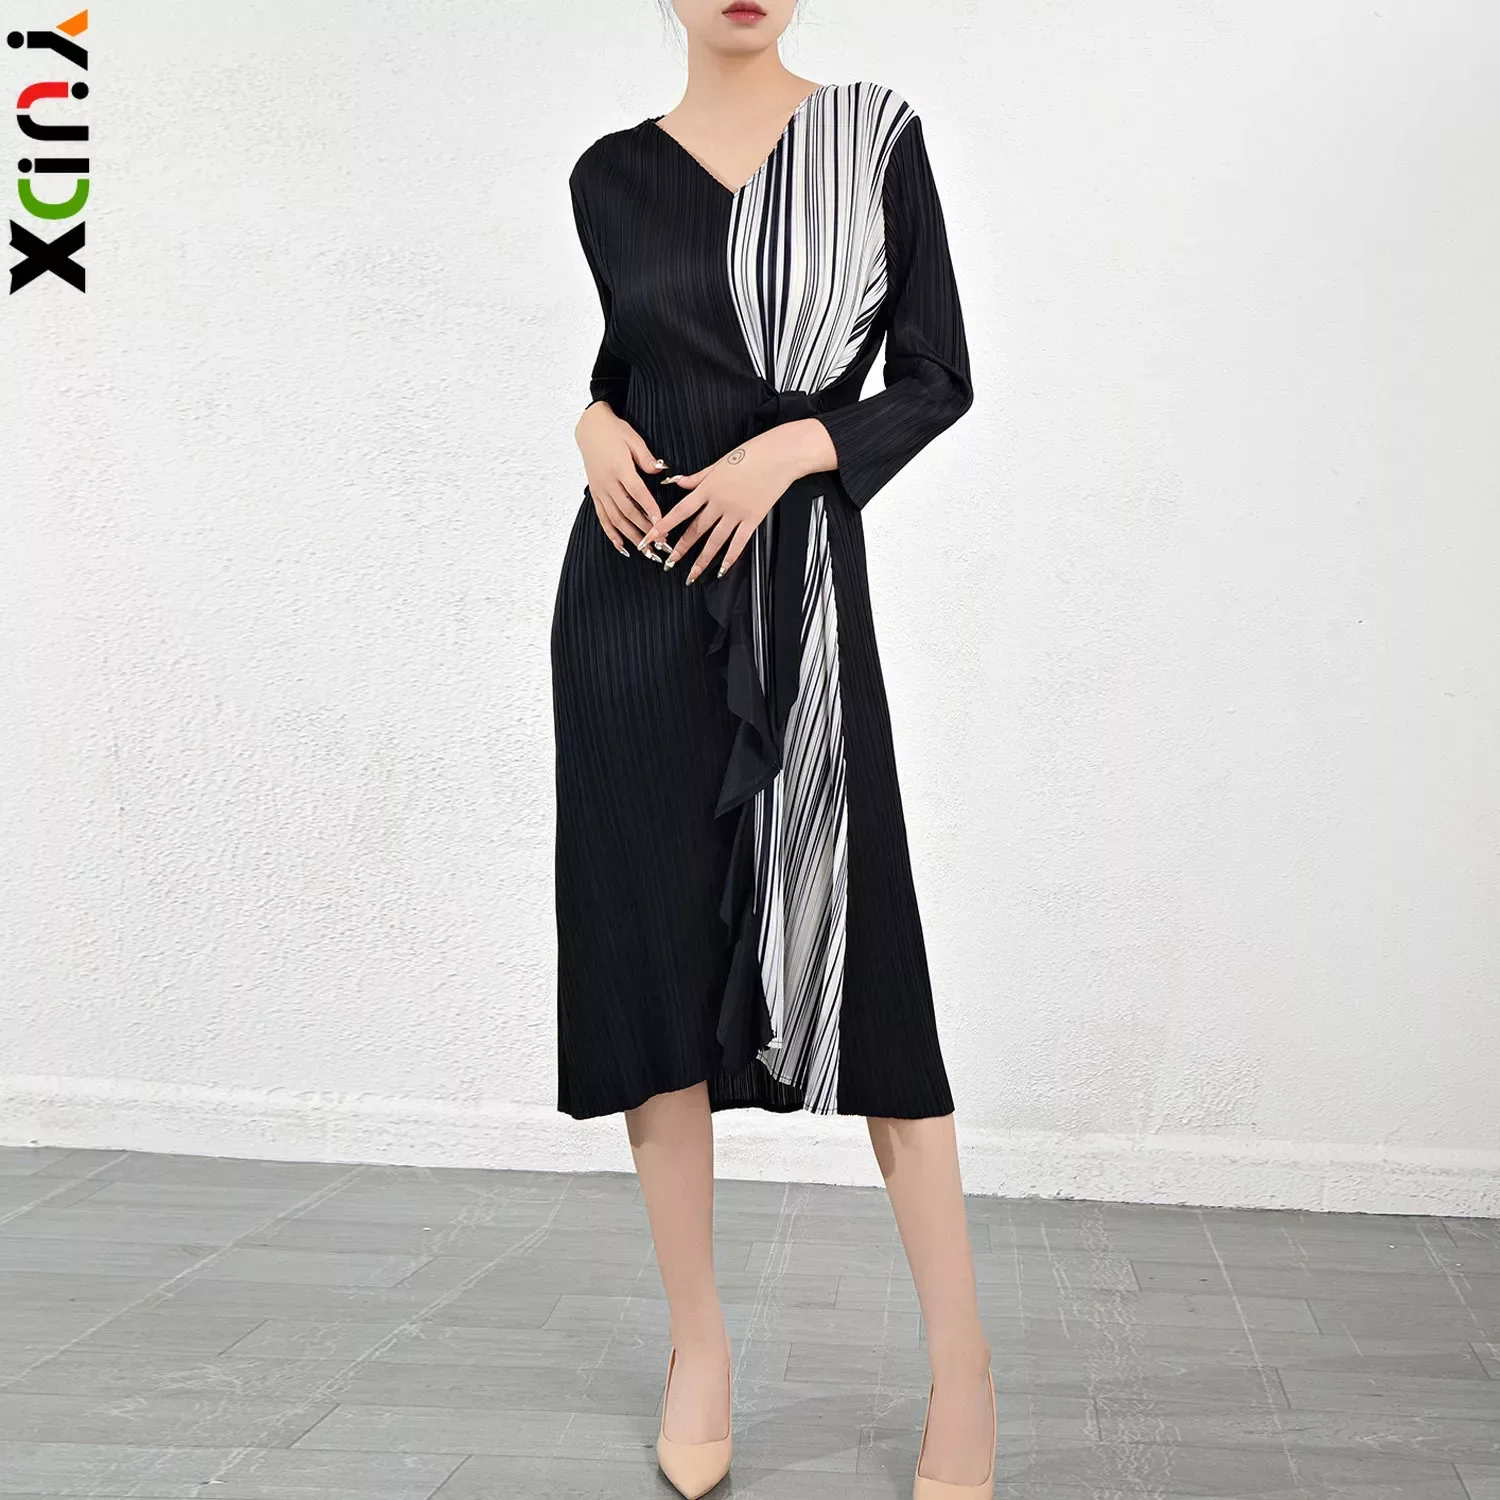 

YUDX Miyake Dress New Niche Design Slimming Contrast Color Mid Length Skirt for Women's Elegant Temperament V-neck Pleated Skirt